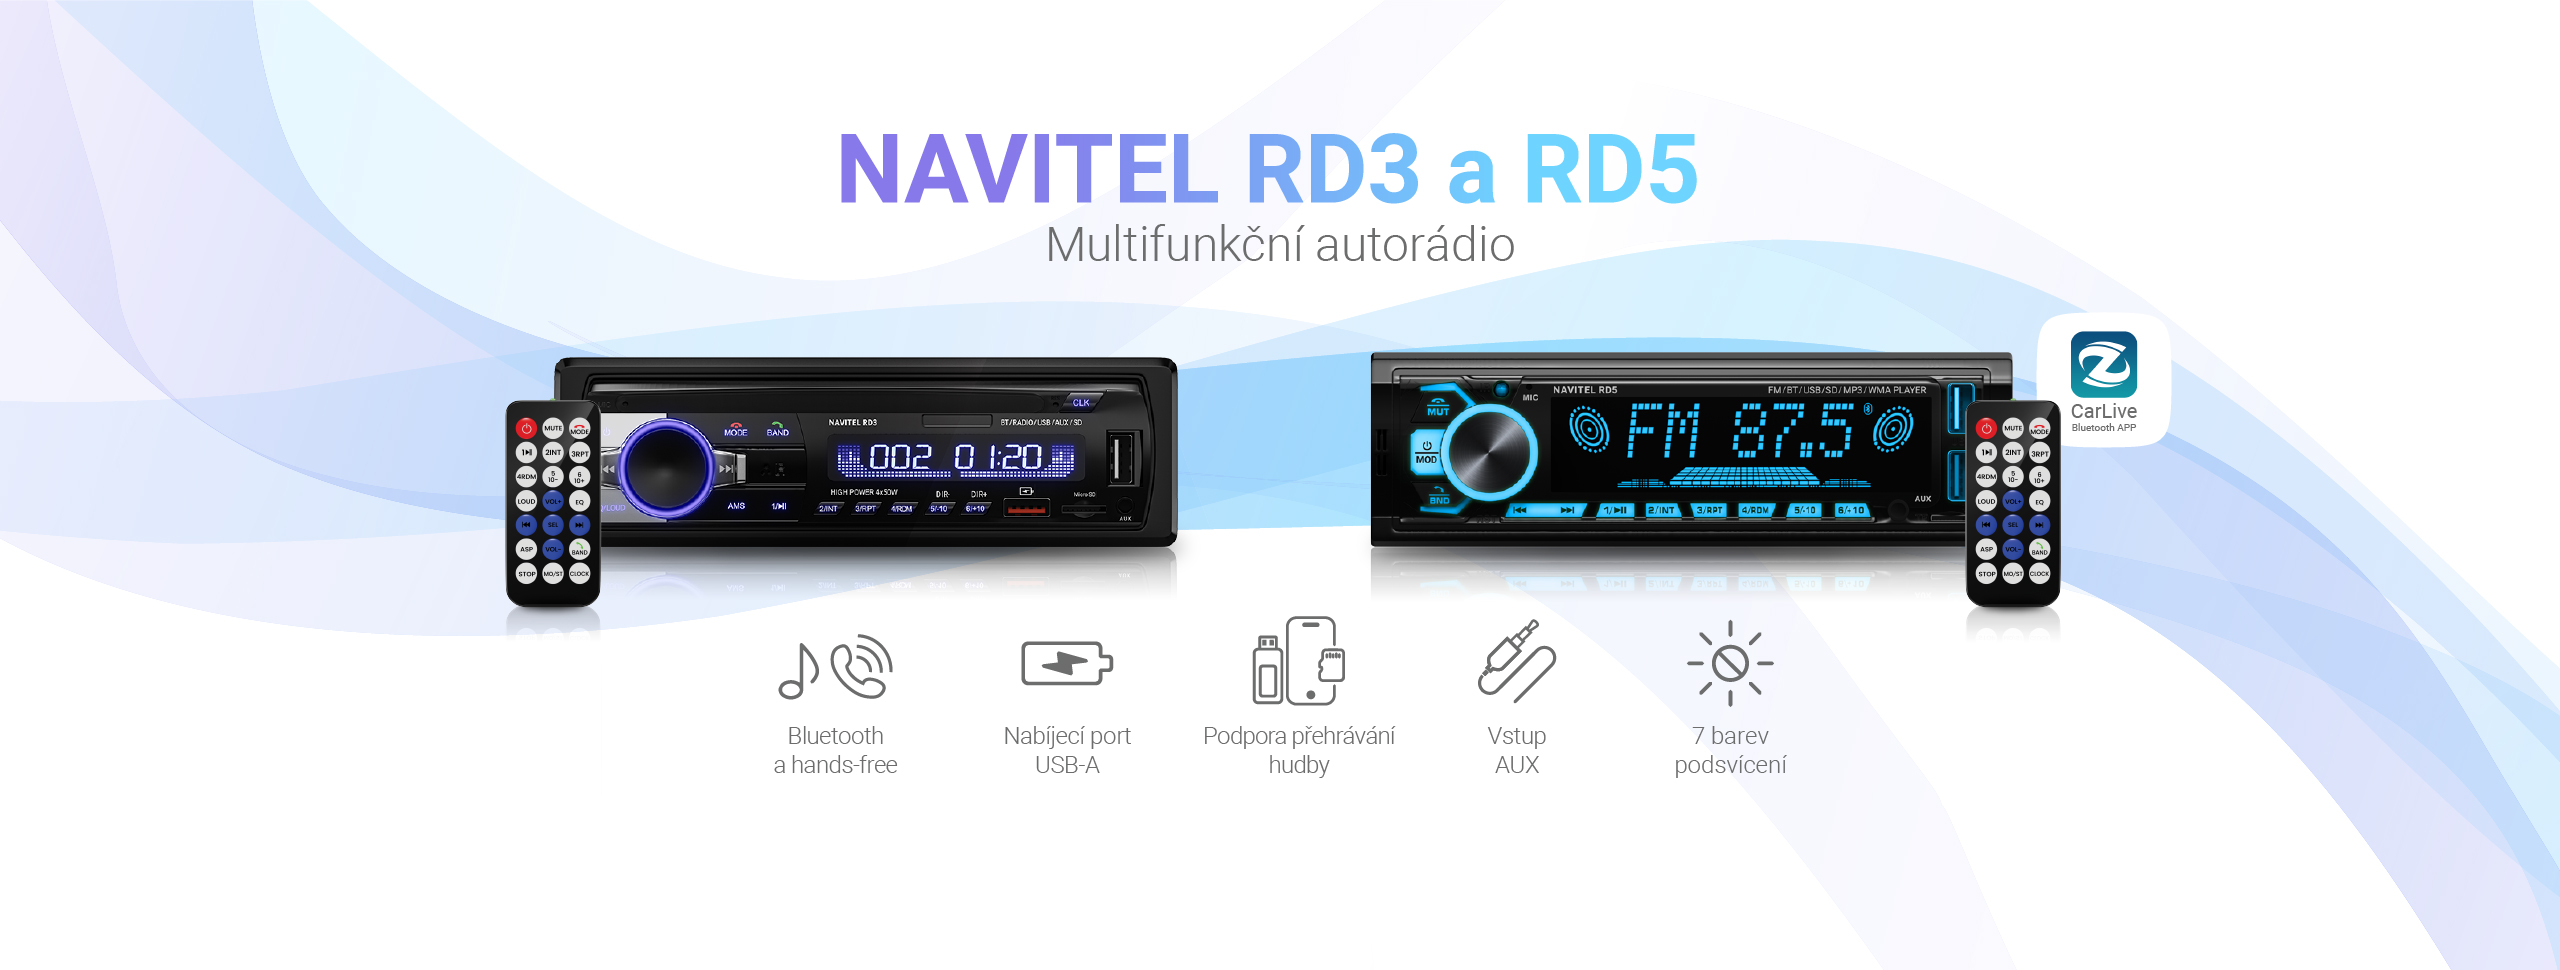 Nová zařízení NAVITEL: multifunkční autorádio NAVITEL RD3 a RD5